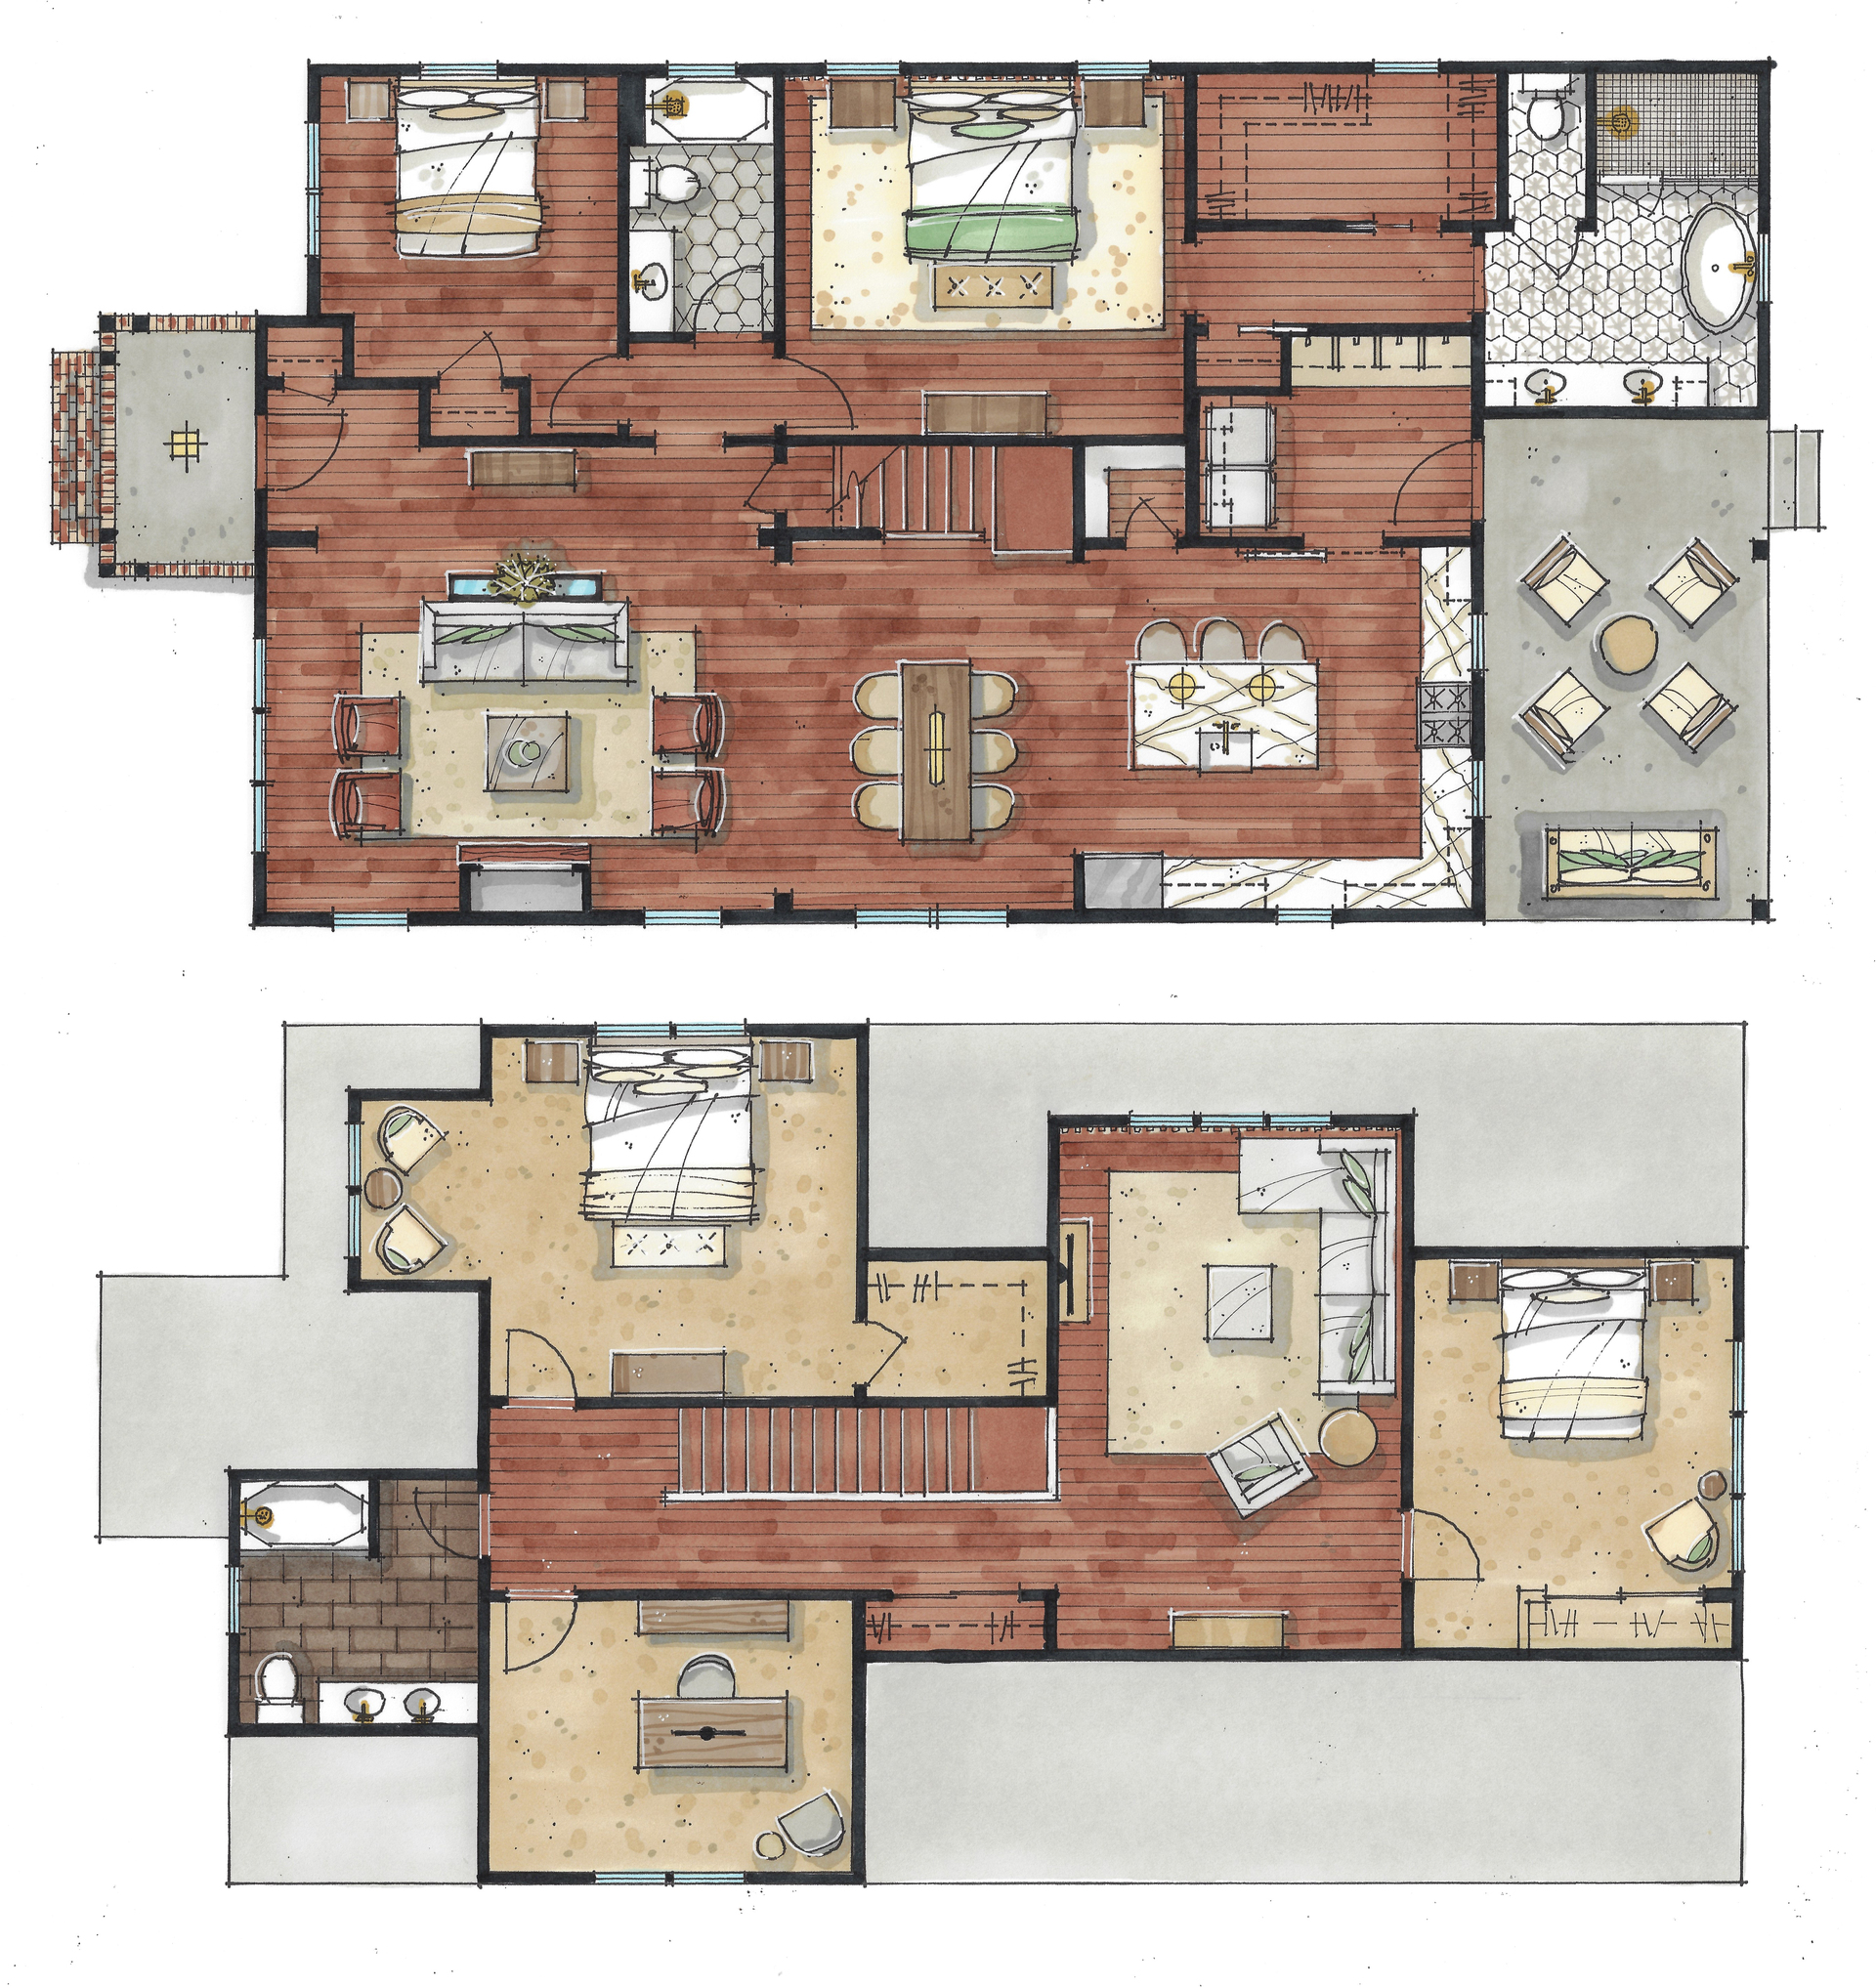 The Herschel Cottage Floorplan